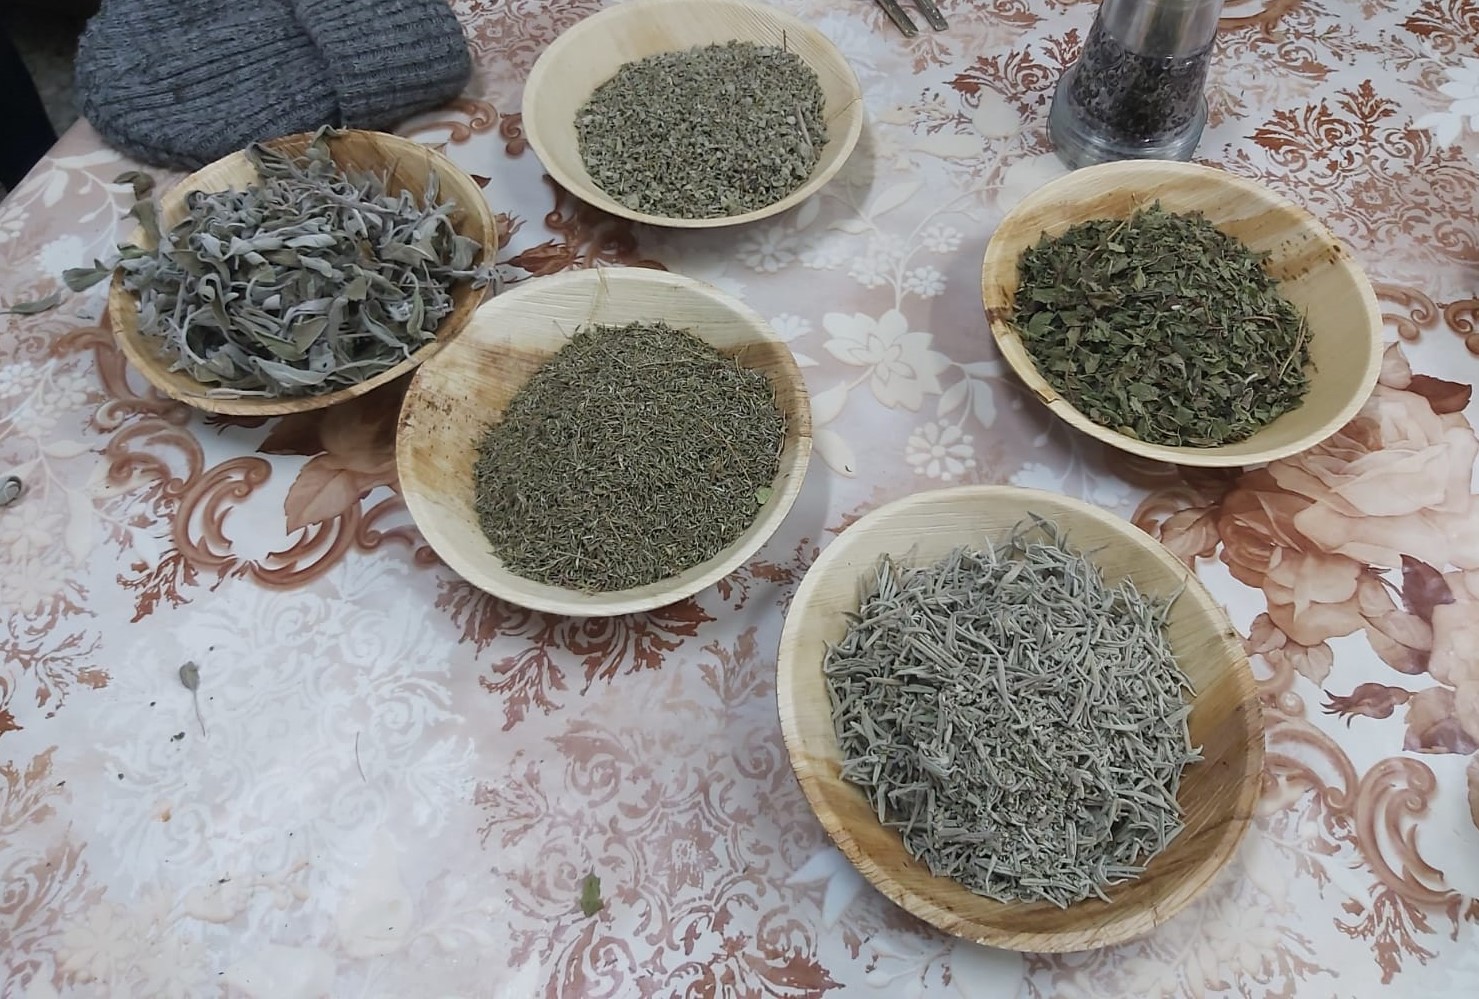 תושבי שכונה ד' בעיר באר שבע השתתפו בסיור מקצועי להכרת הצמחייה בשכונה